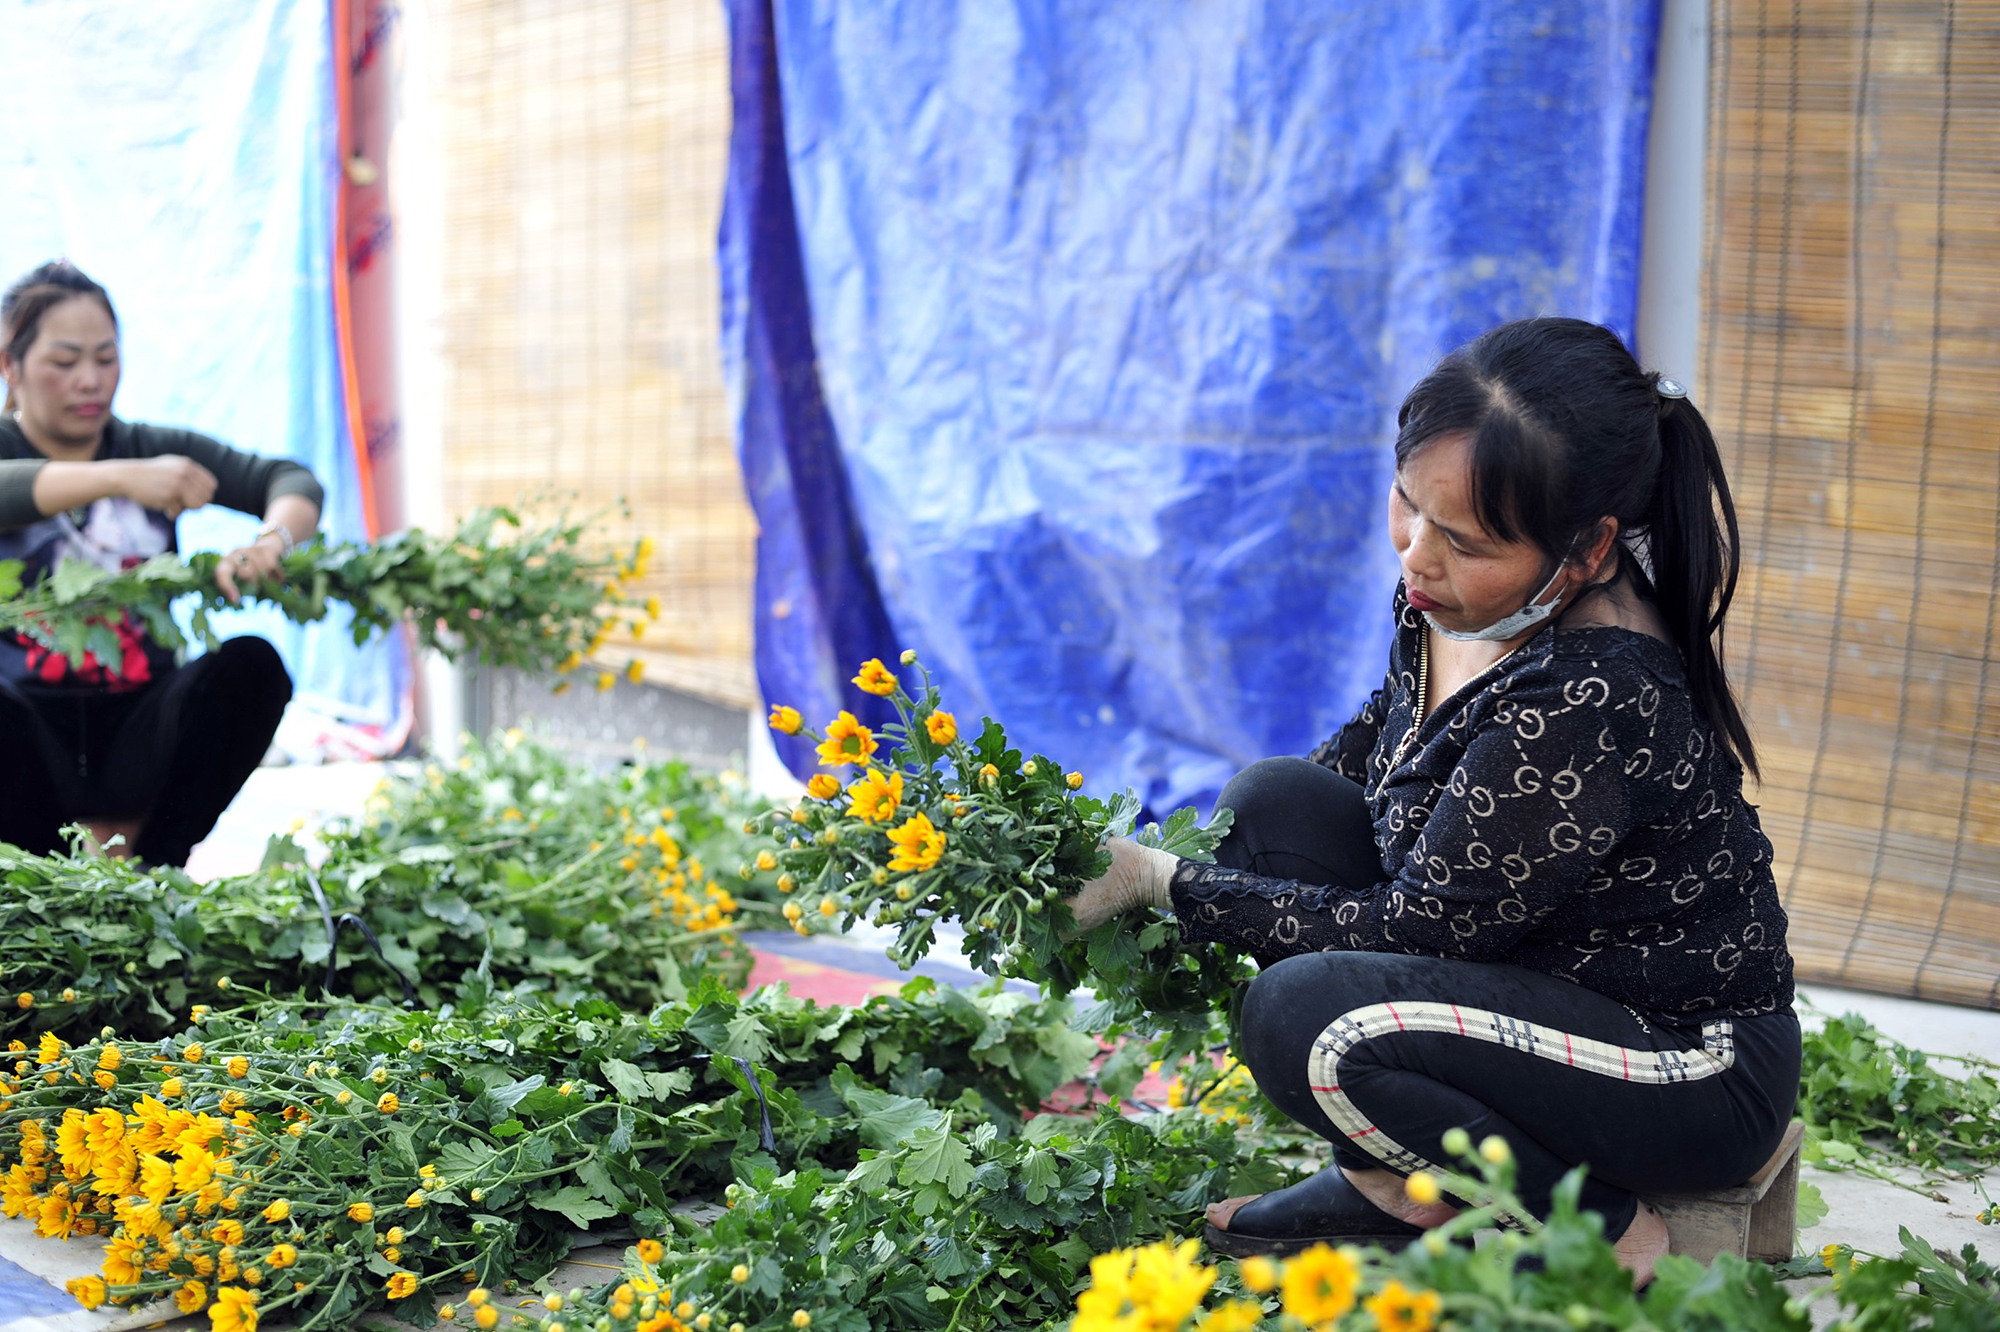 Hoa nở “lệch múi giờ”, nông dân Hà Nội thu hoạch sớm để bảo quản lạnh, chờ phục vụ người chơi đúng dịp Tết - Ảnh 4.